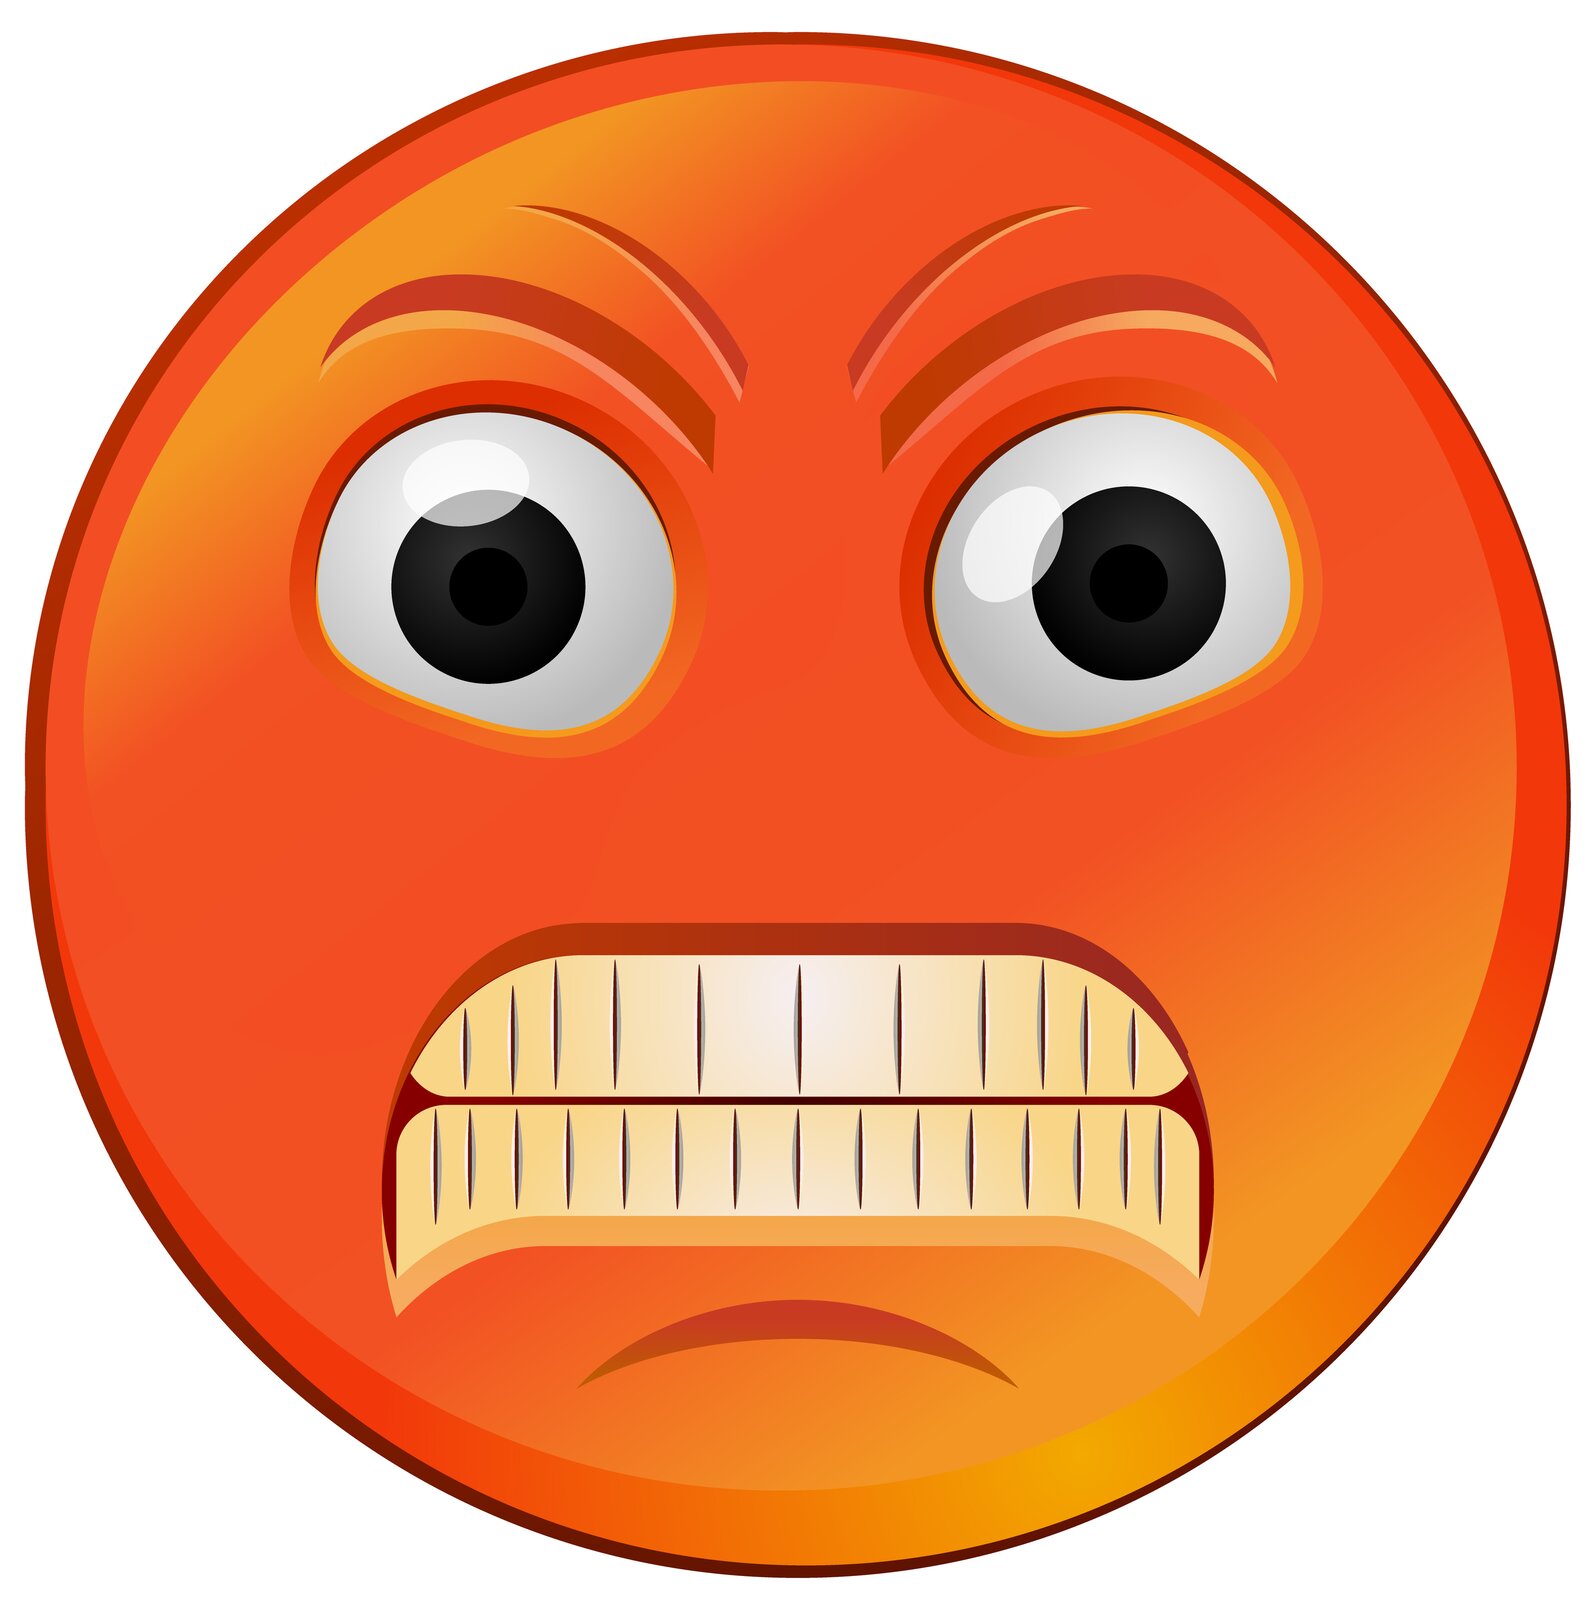 Ilustracja przedstawia emotikonę symbolizującą złość. Ikonka ma kształt koła, jest koloru pomarańczowo-czerwonego i ma mocno wyszczerzone zęby.